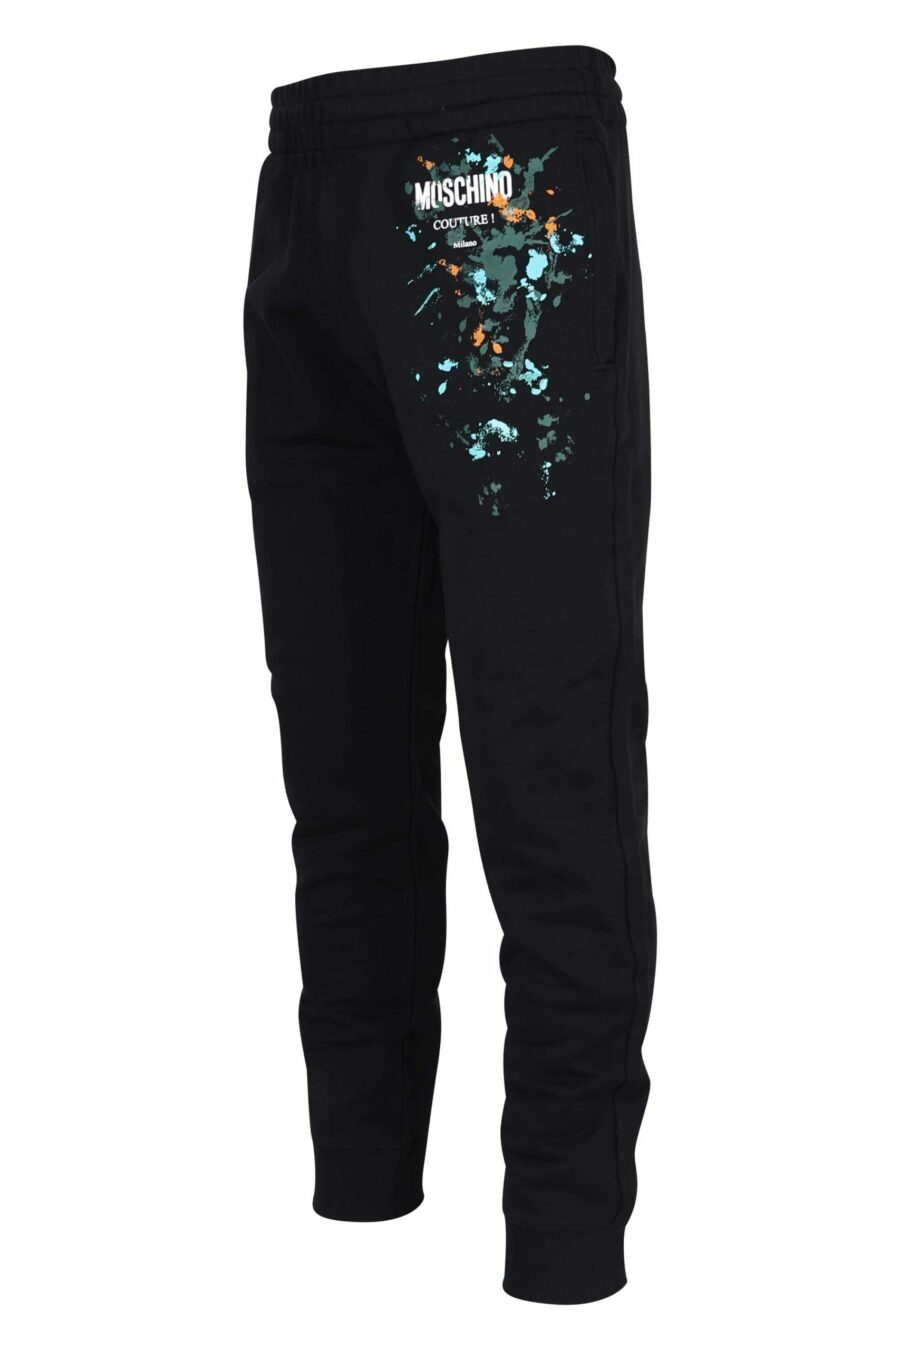 Pantalón de chándal negro de algodón orgánico y logo "splash" multicolor - 667113349237 1 scaled